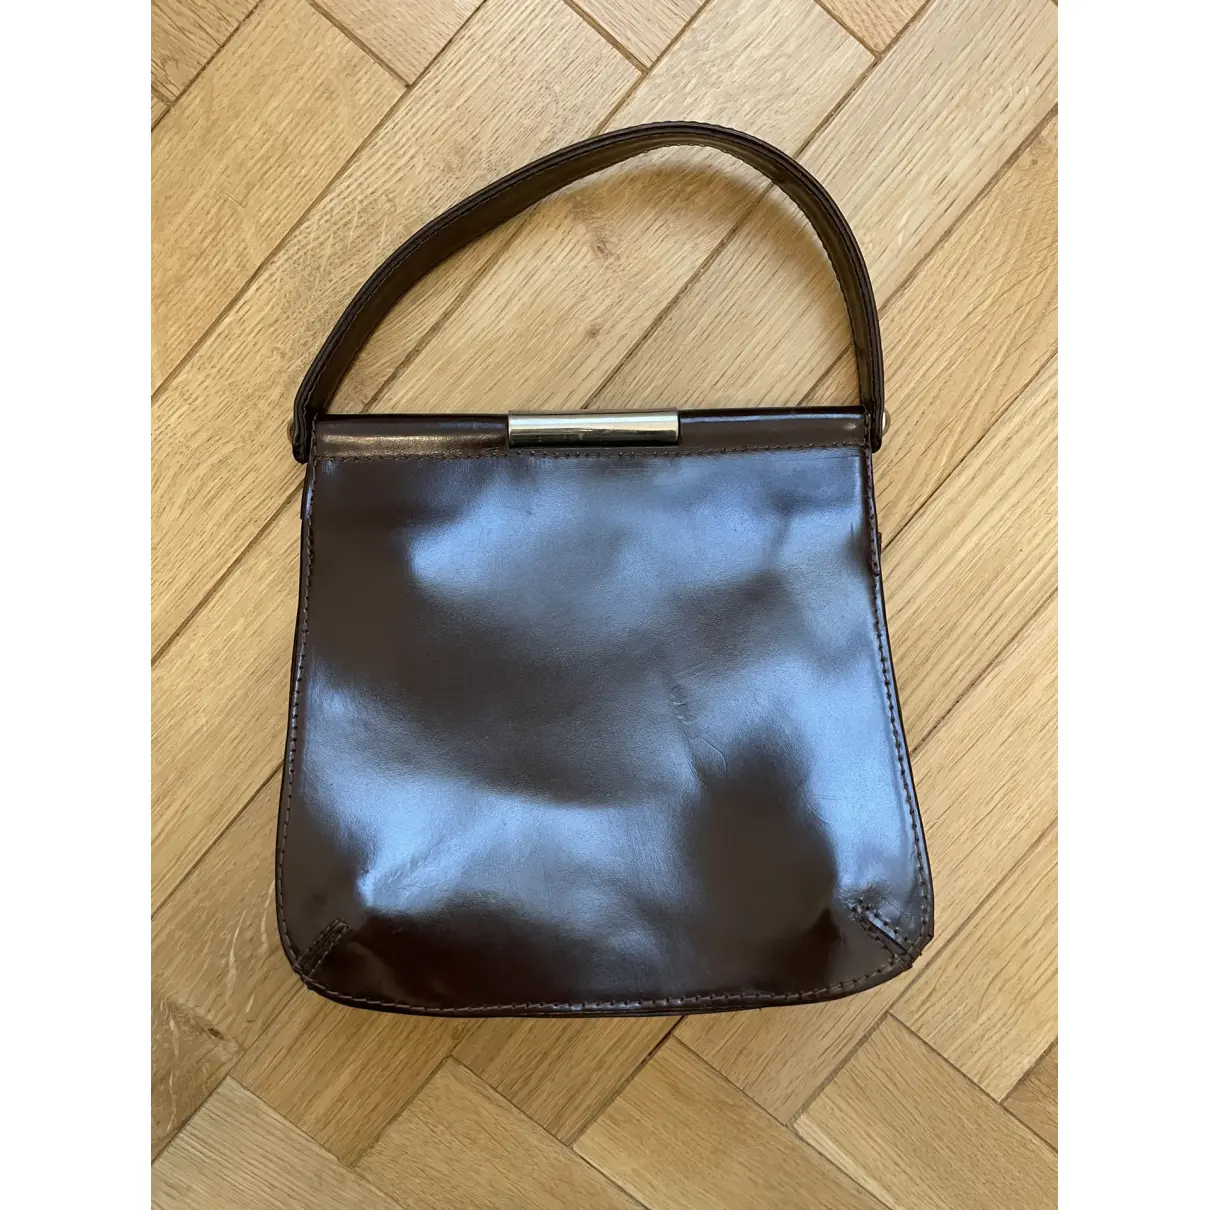 Buy Arezzo Patent leather handbag online